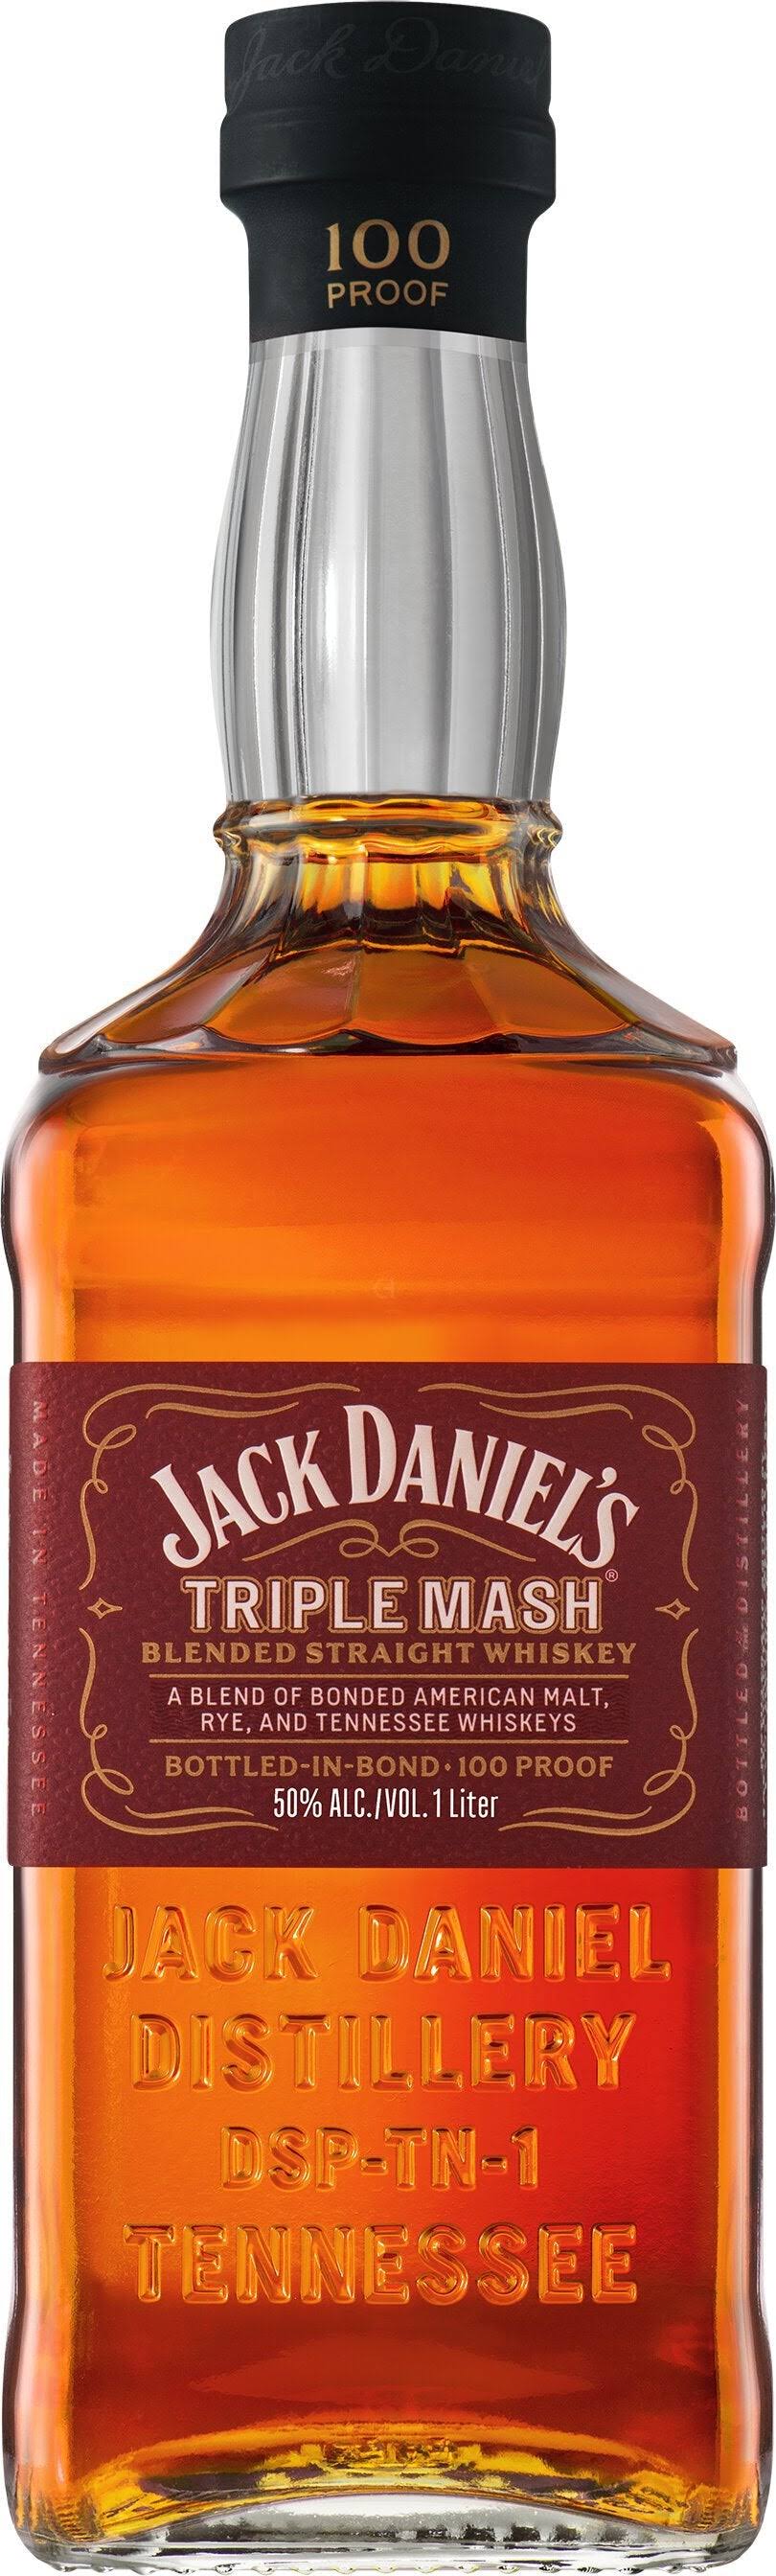 Jack Daniel's Whiskey, Blended Straight, Triple Mash - 700 ml